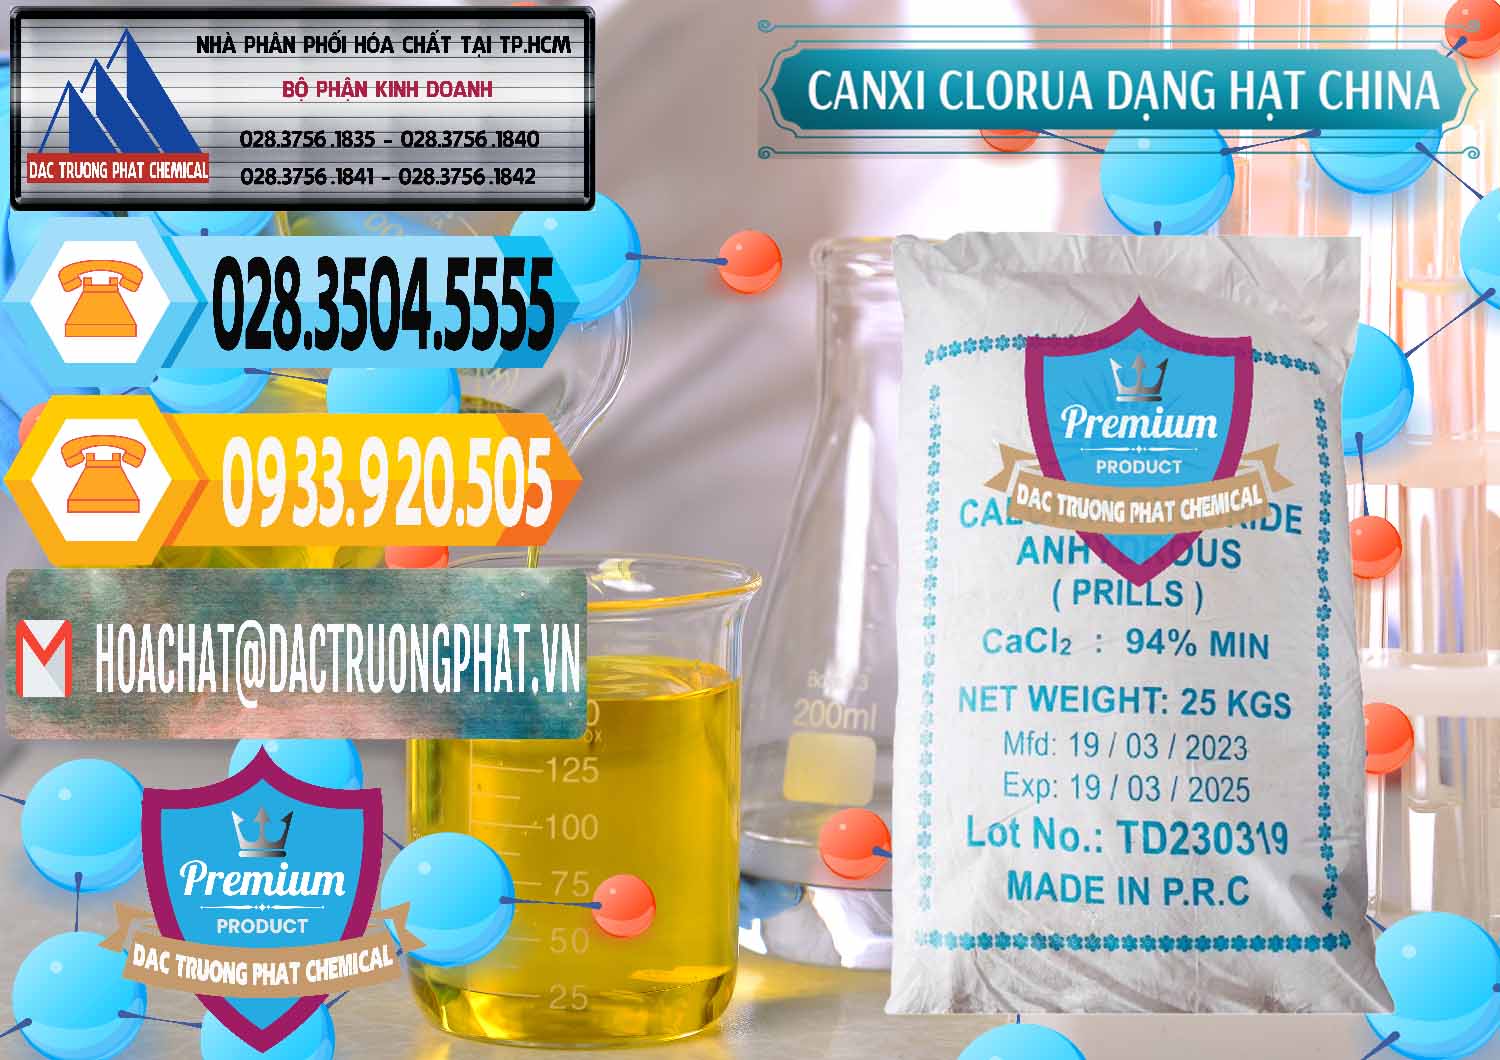 Nơi bán ( cung ứng ) CaCl2 – Canxi Clorua 94% Dạng Hạt Trung Quốc China - 0373 - Công ty chuyên cung cấp _ bán hóa chất tại TP.HCM - hoachattayrua.net